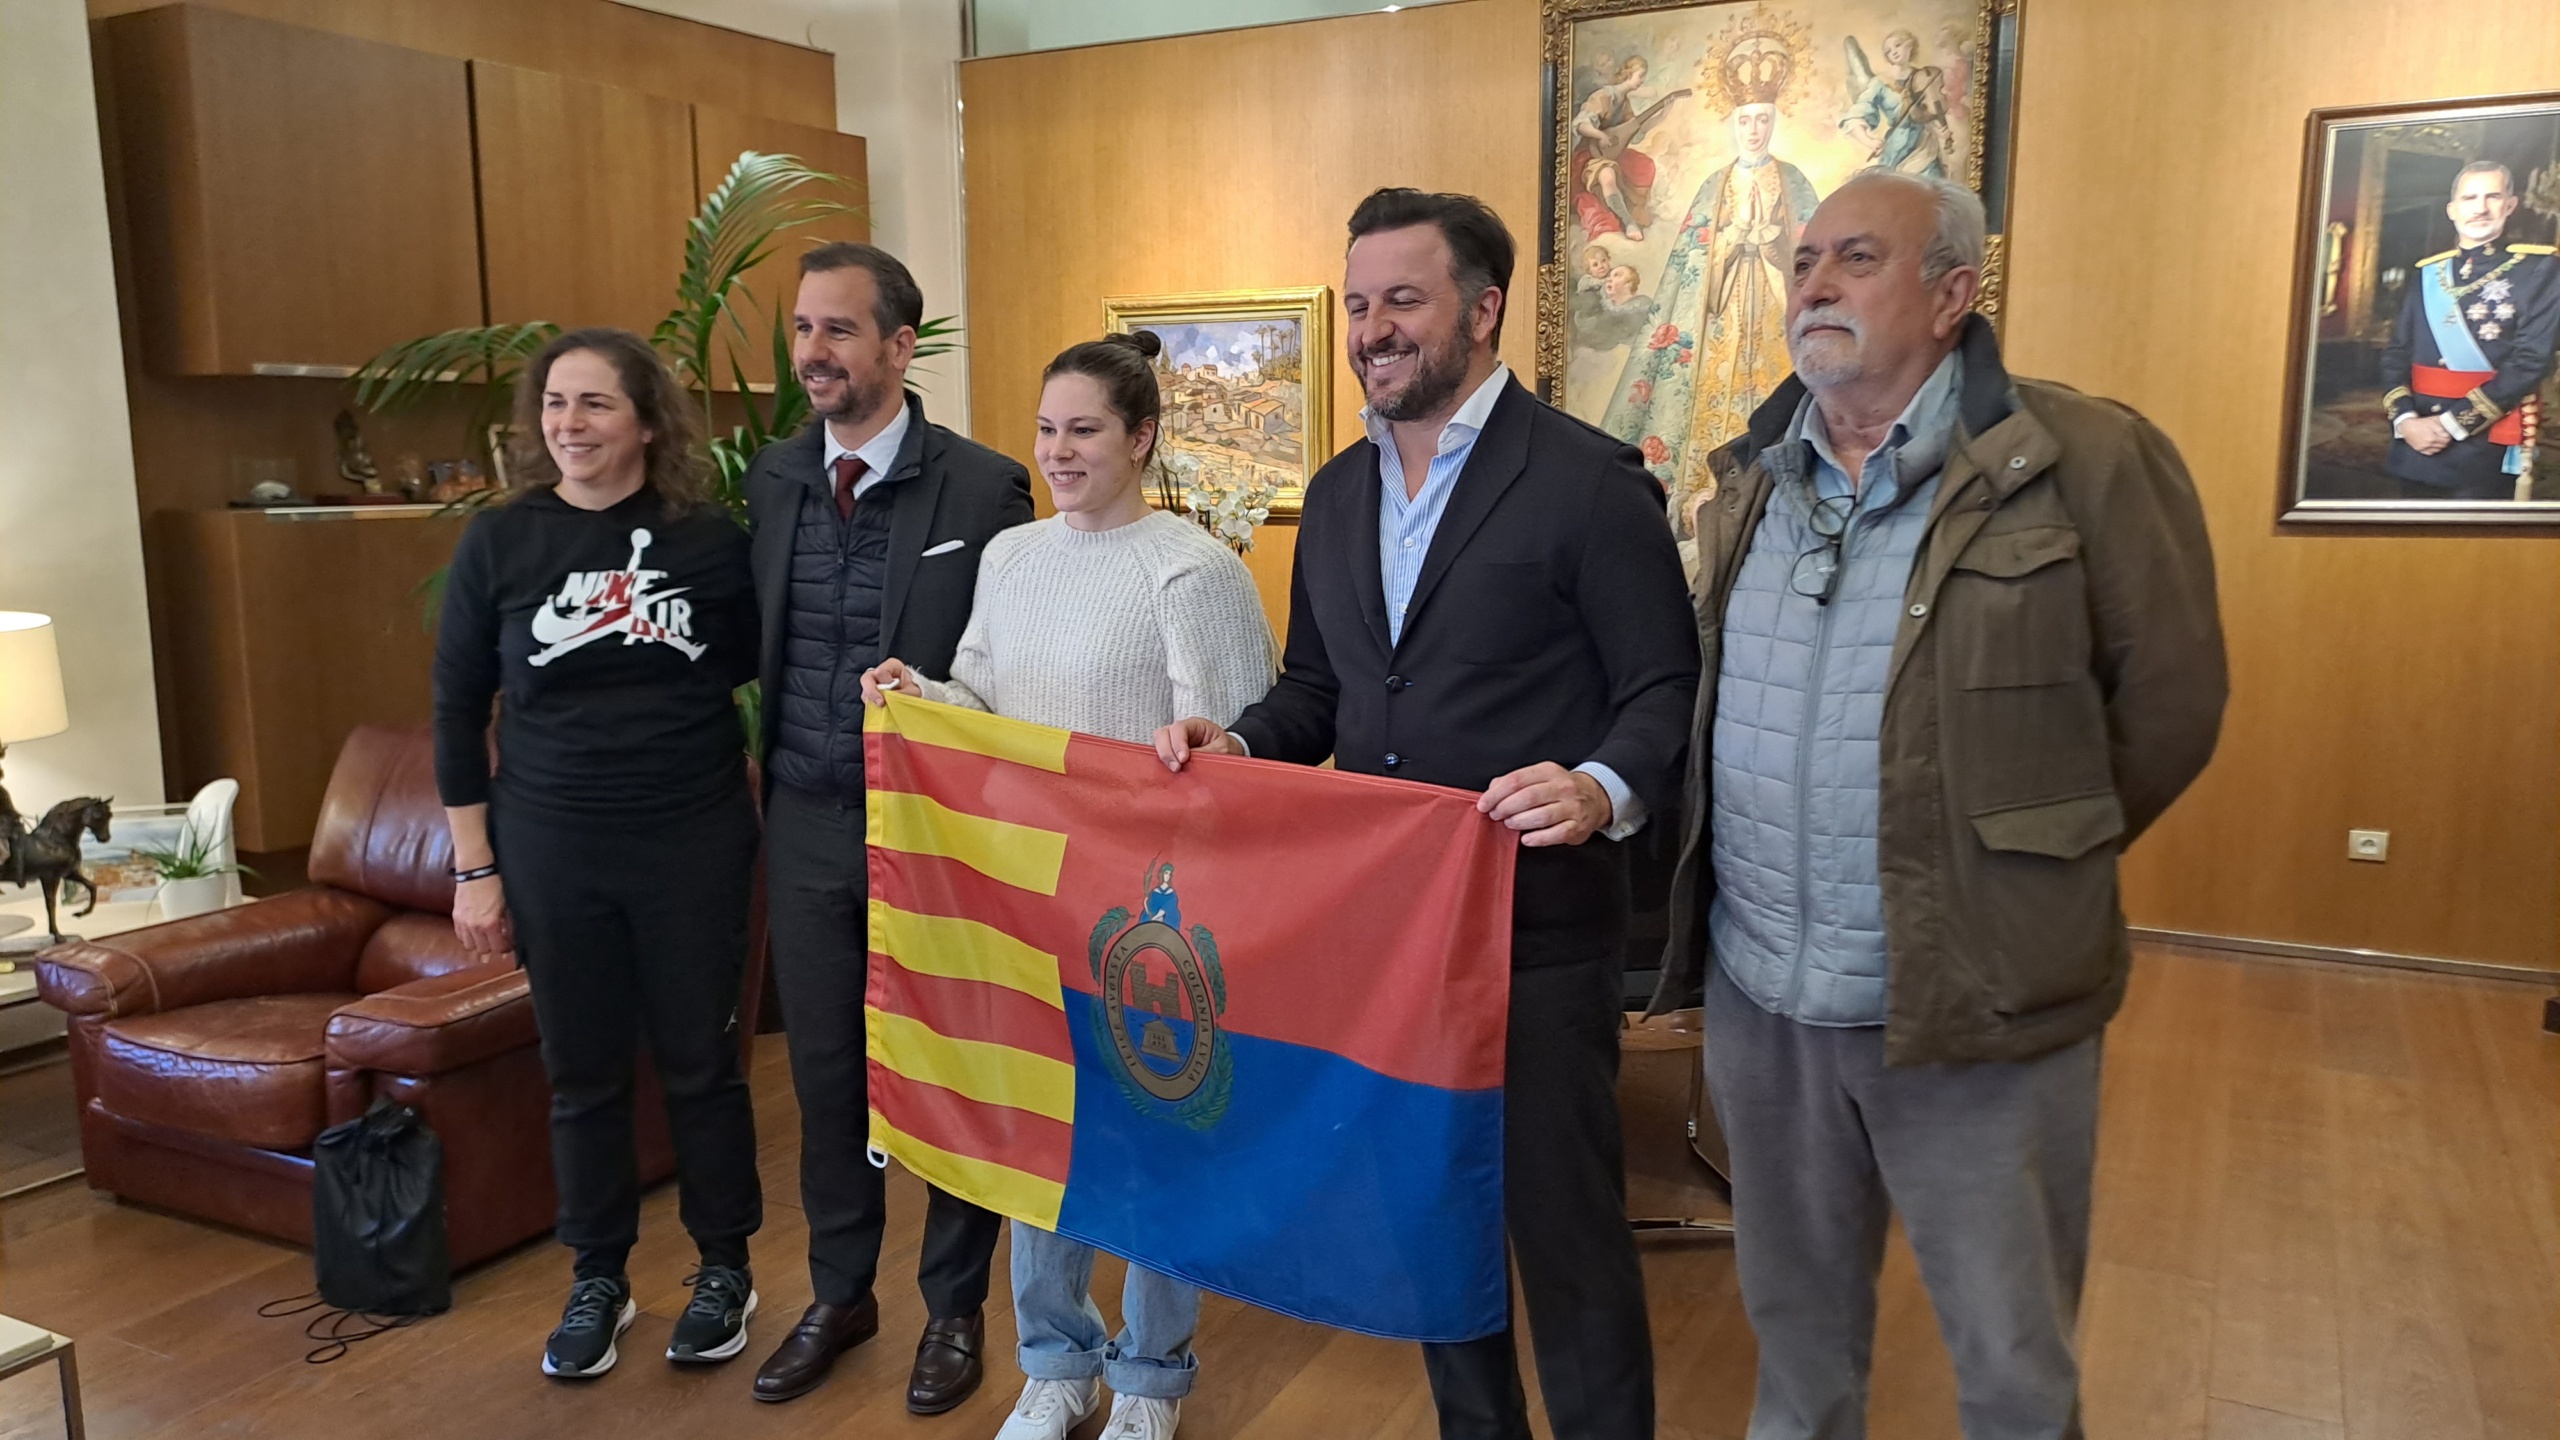 La nadadora ilicitana Ángela Martínez recibe un homenaje en el Ayuntamiento